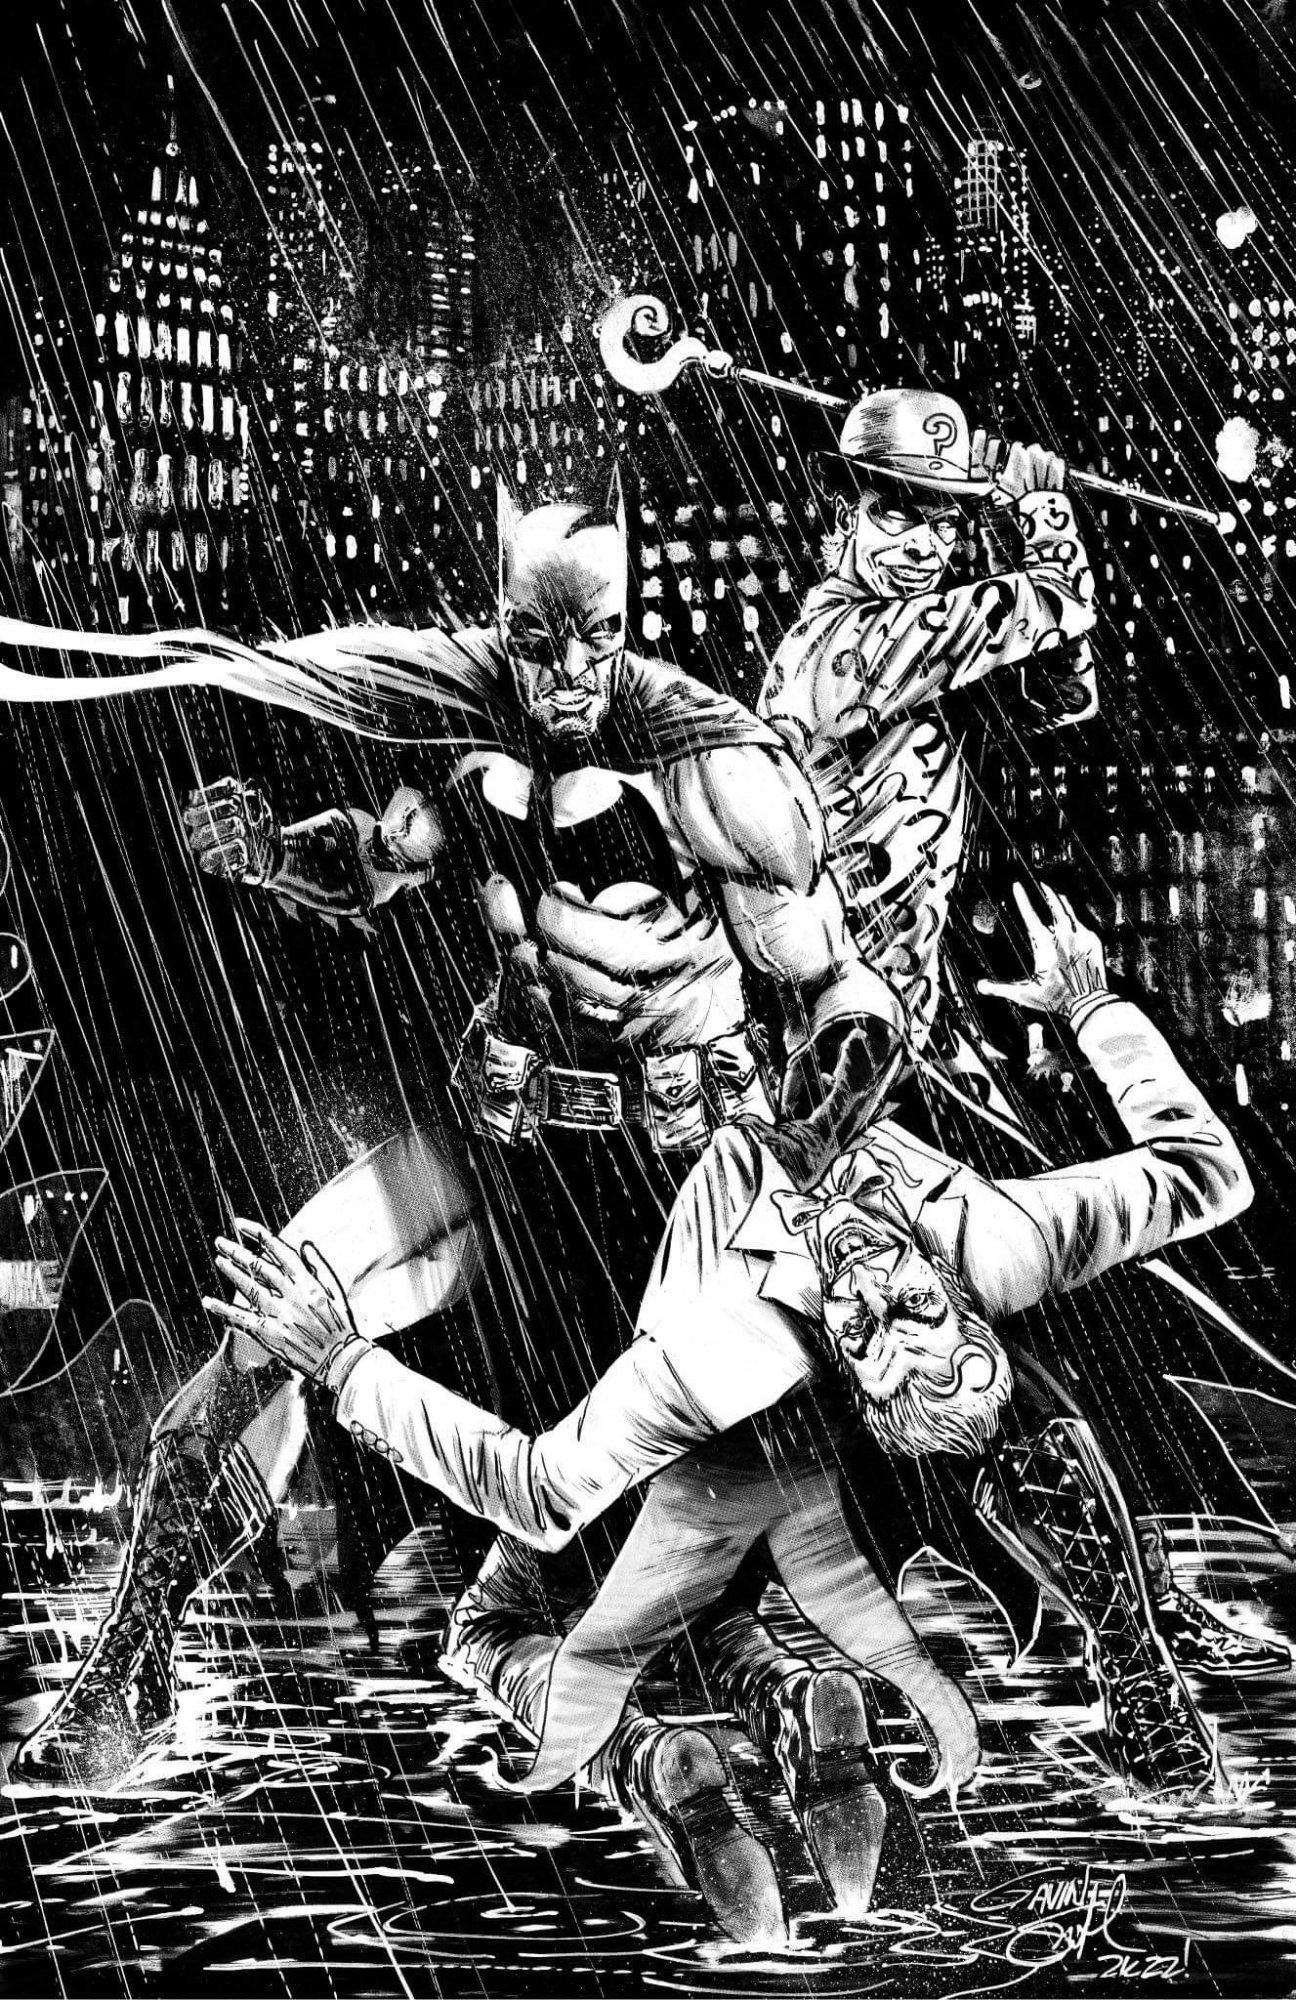 Batman vs. Joker & Riddler (2022), in Greg Gross's Gavin Smith Comic Art  Gallery Room